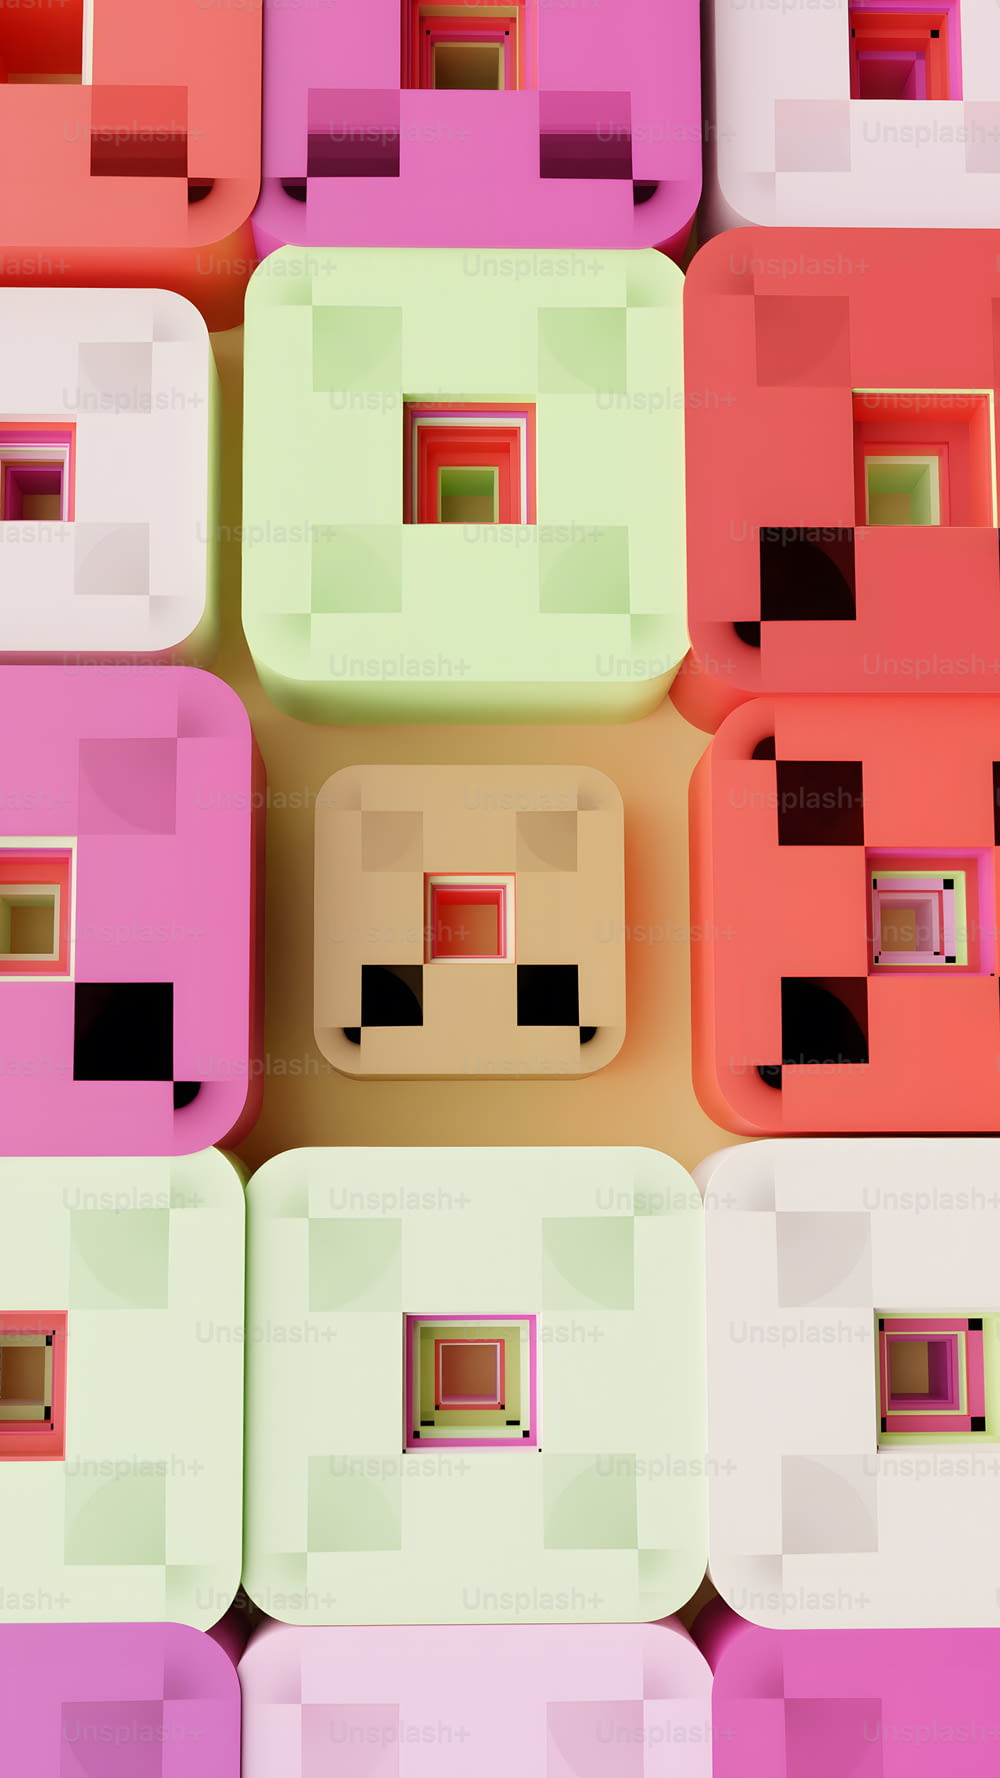 Un grupo de bloques de diferentes colores sentados uno al lado del otro